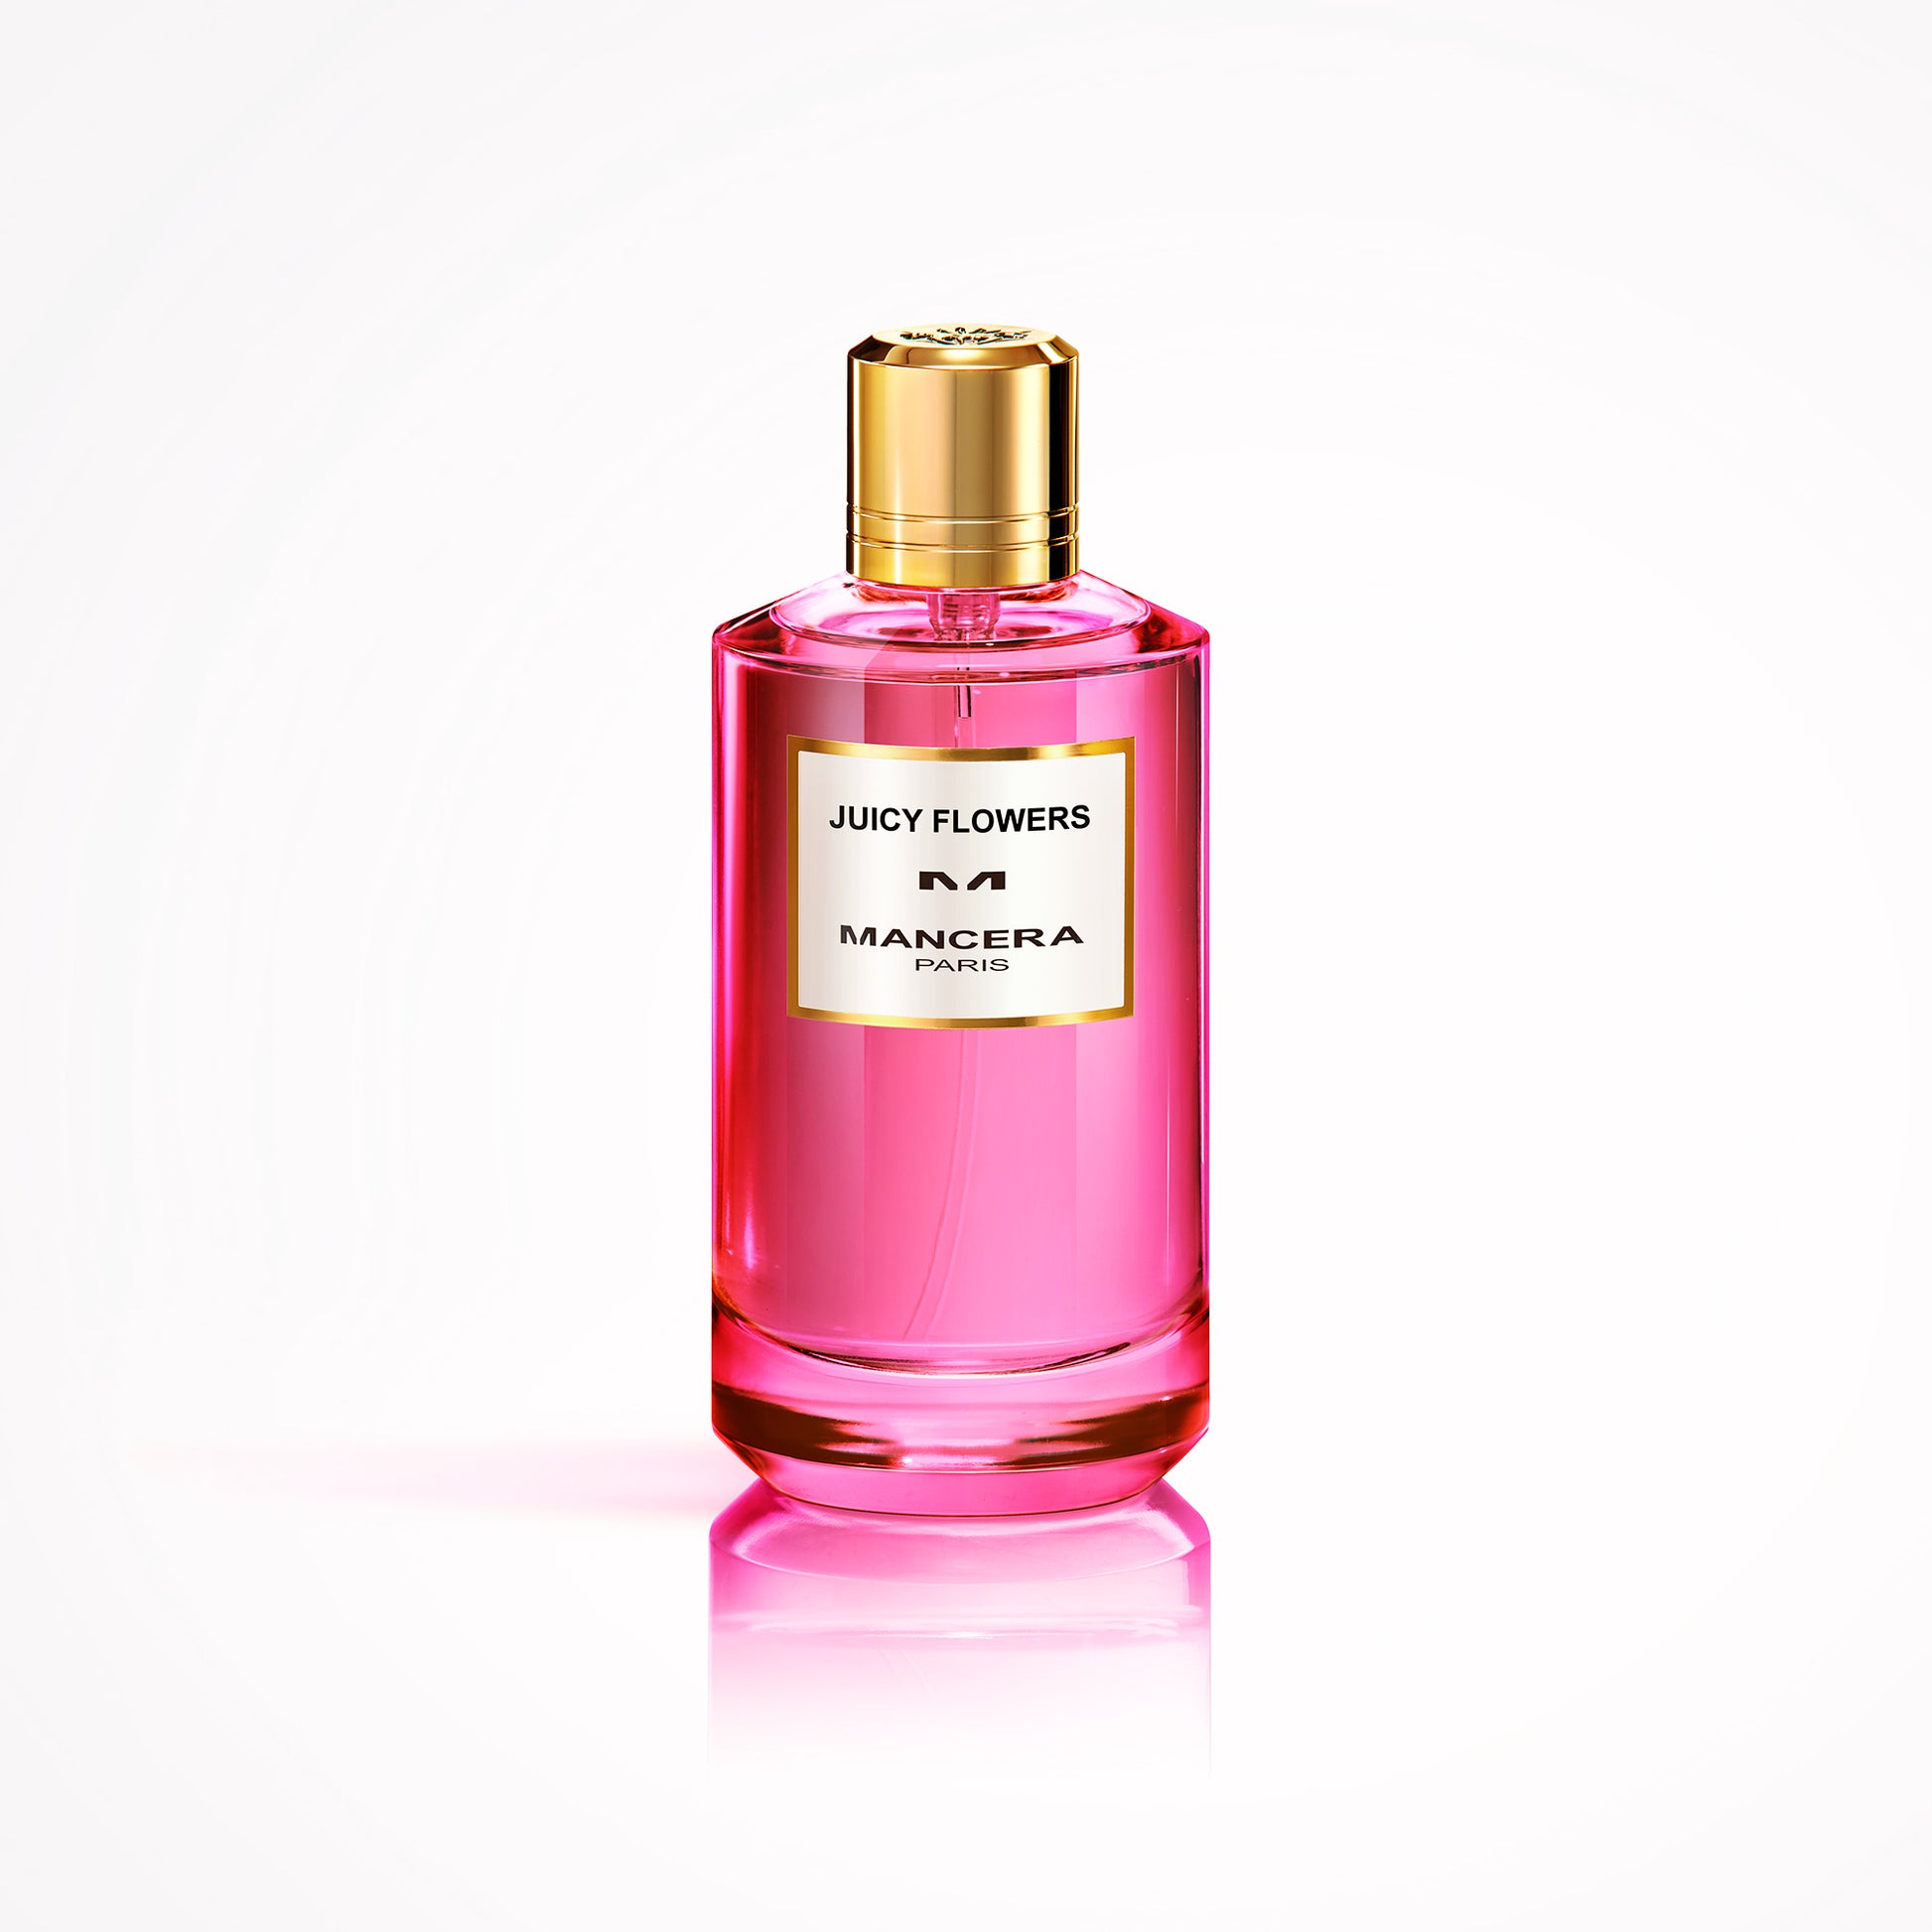 Mancera Juicy Flowers Perfume | So Avant Garde